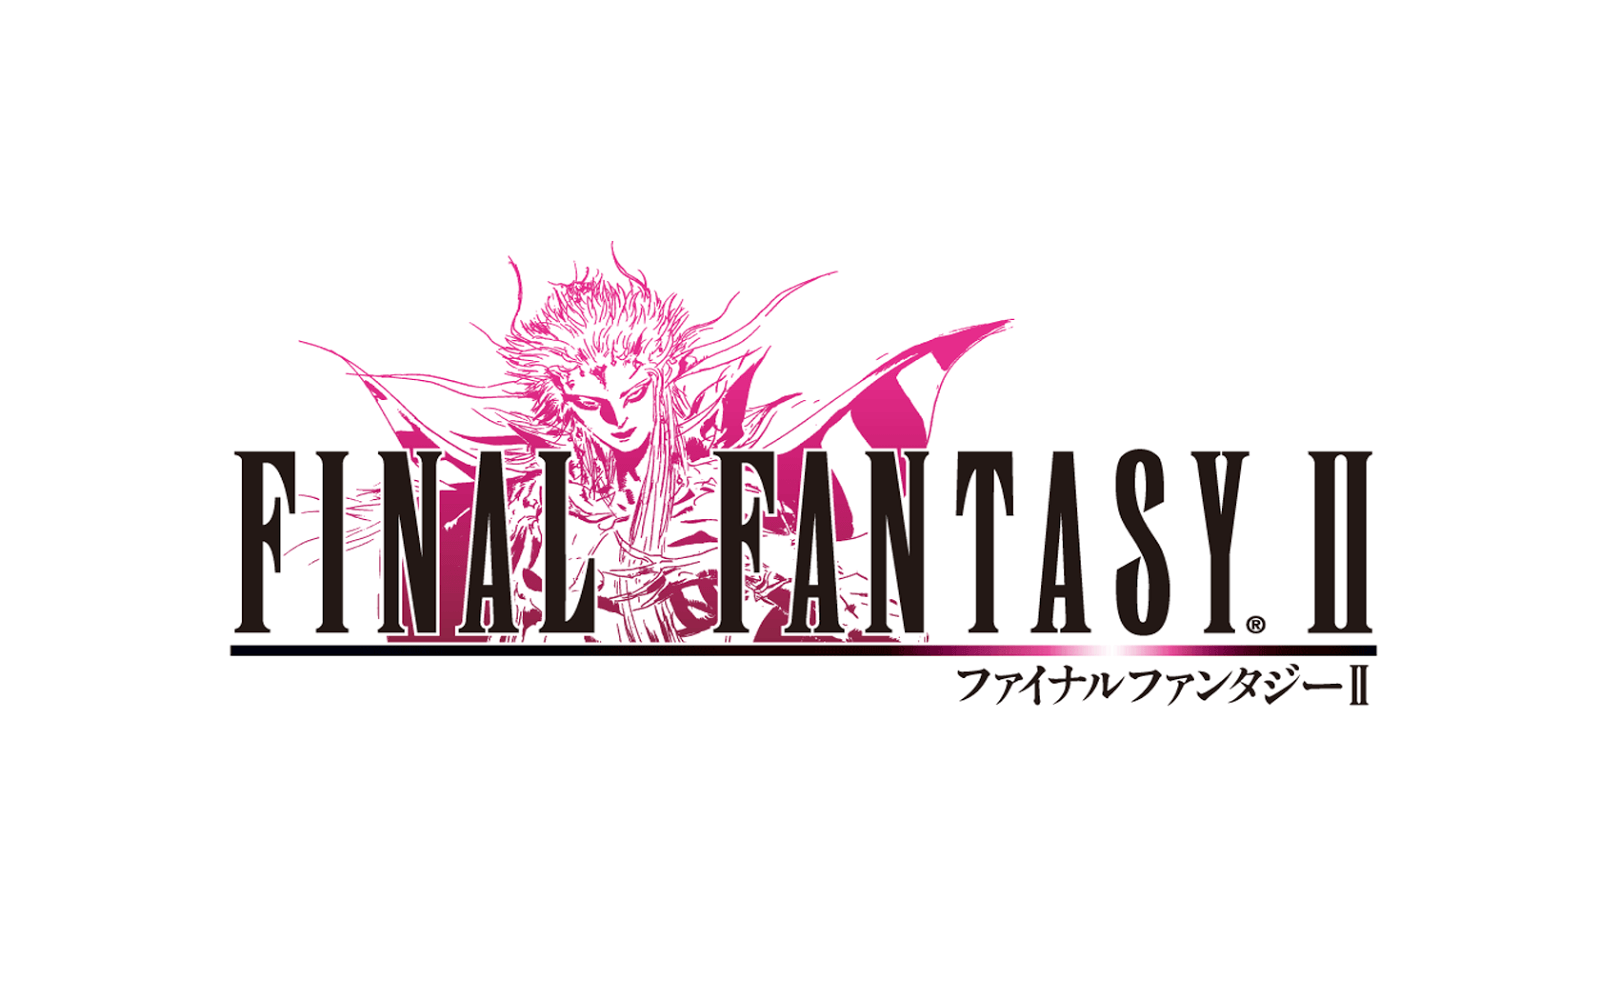 Final Fantasy Wallpaper: Final Fantasy II Logo Wallpaper